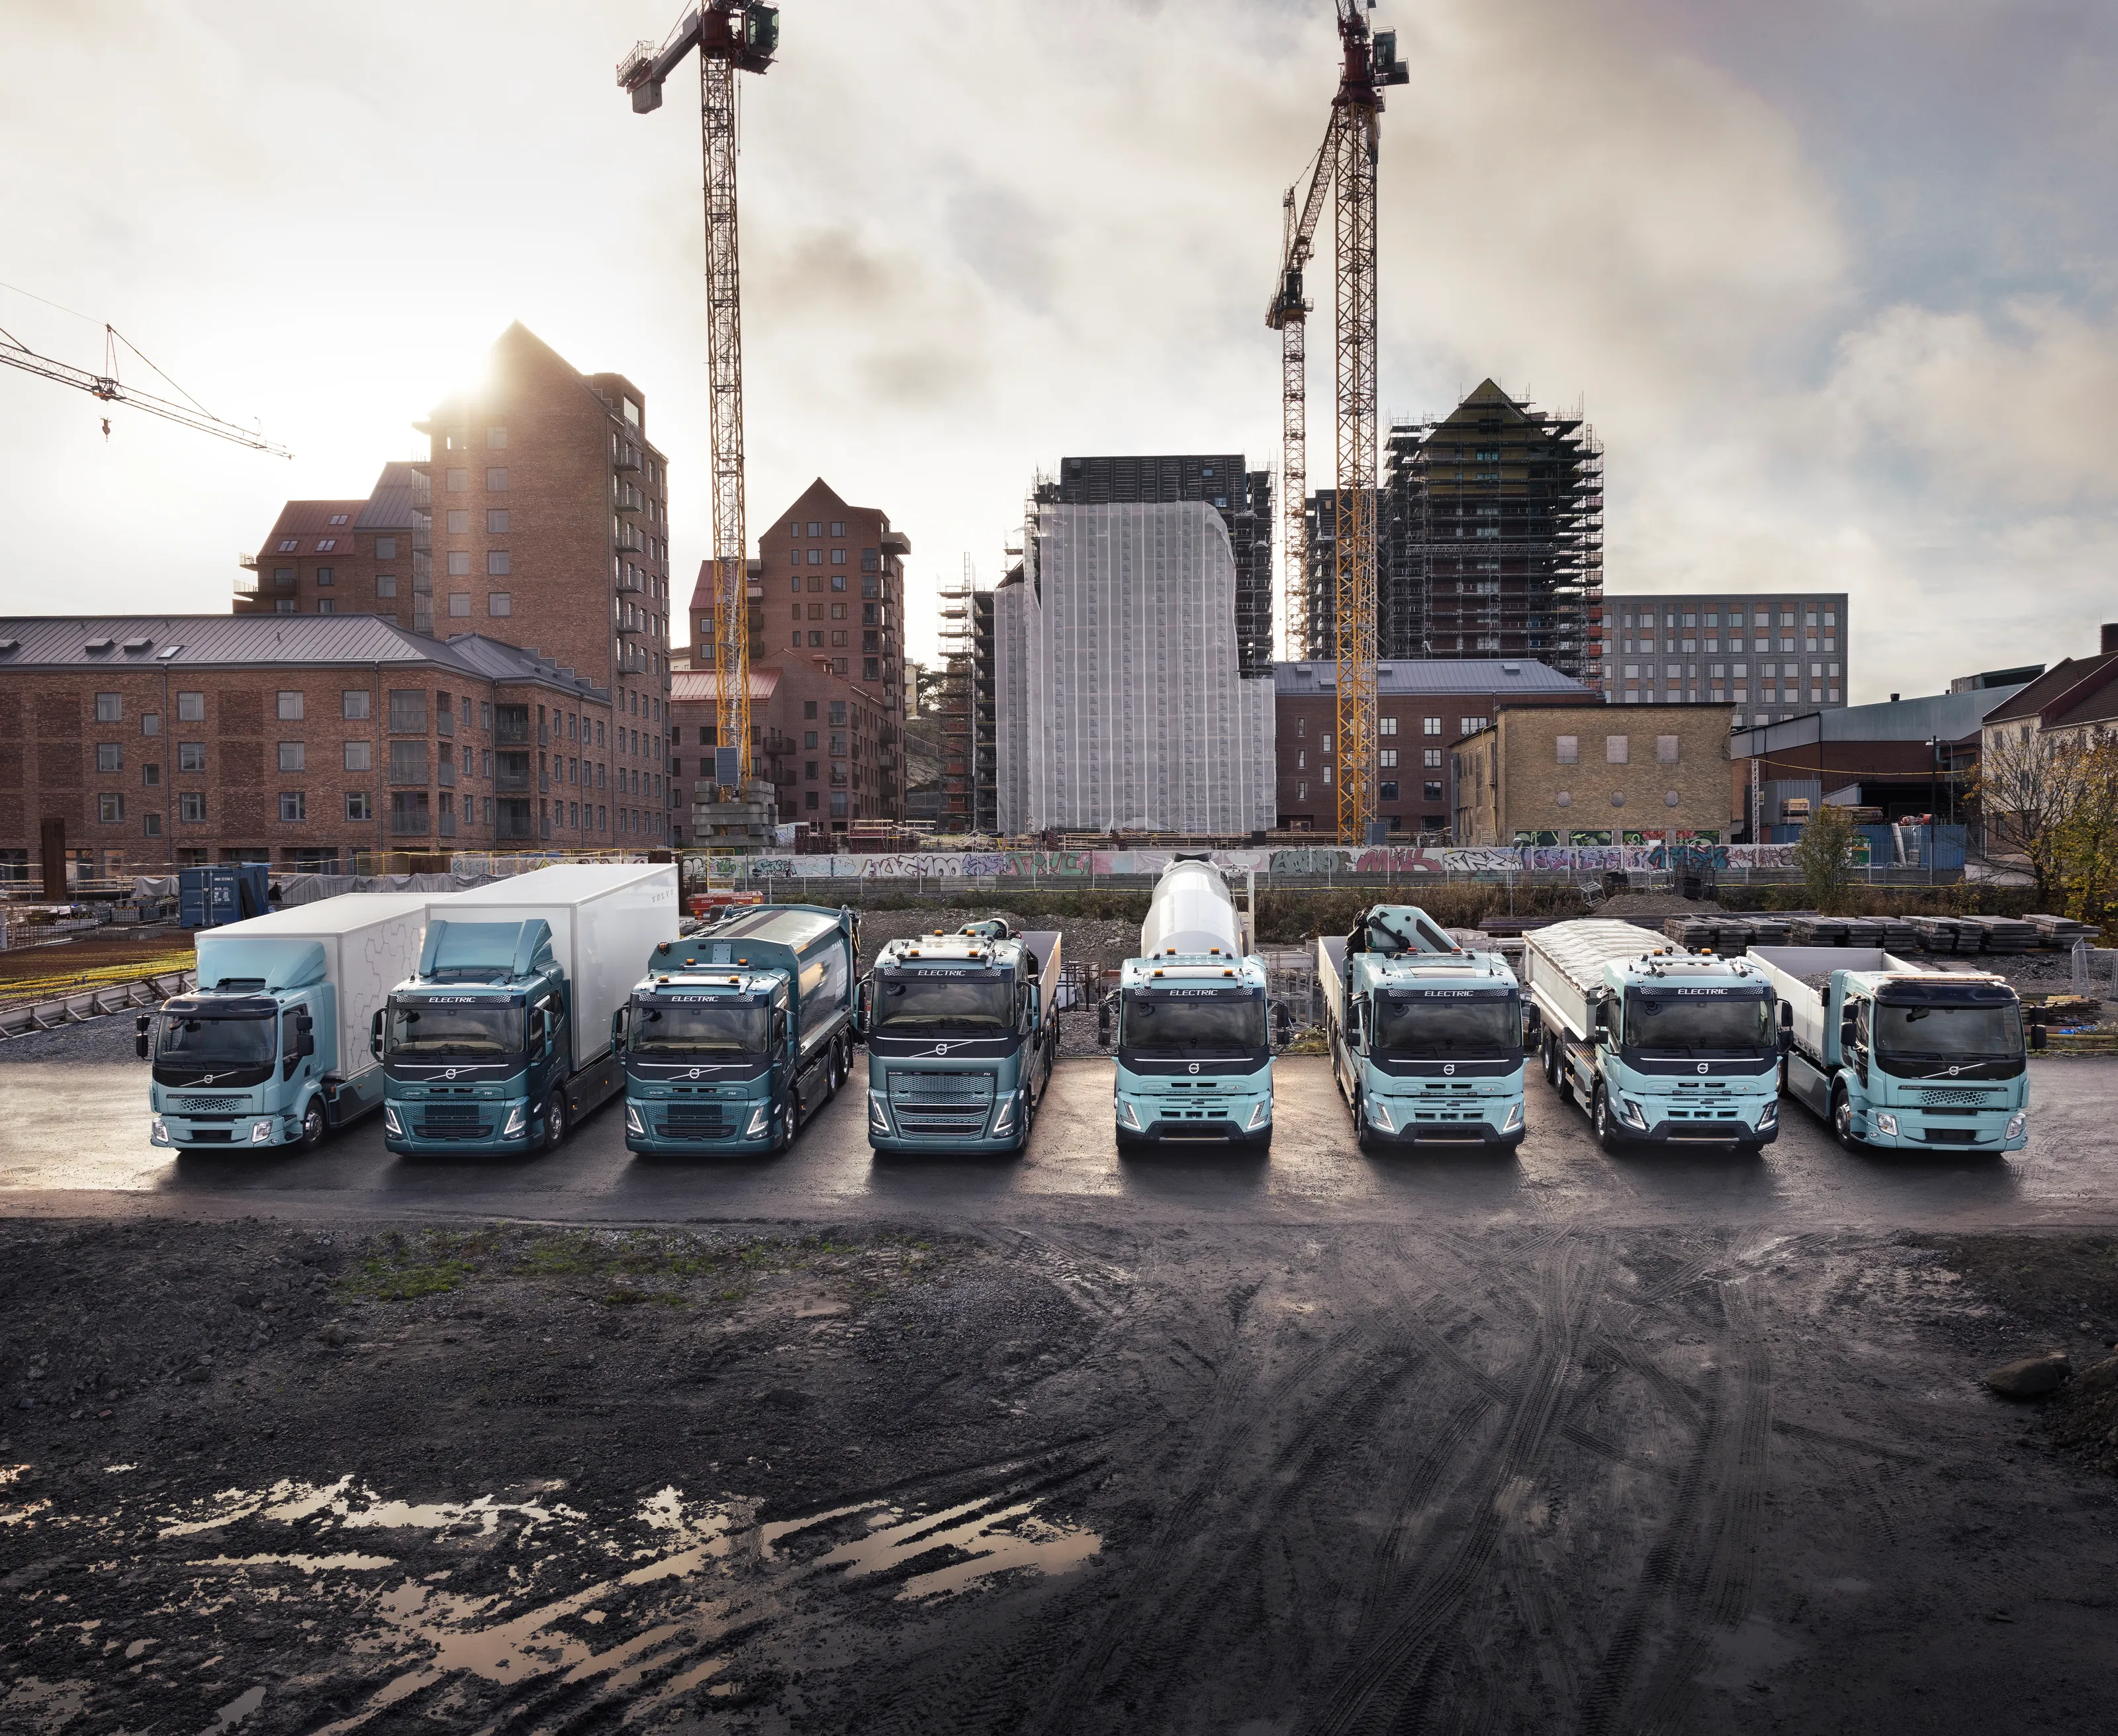 Åtte ulike elektriske lastebiler står på rekke, oppstilt foran heisekran og urbant miljø